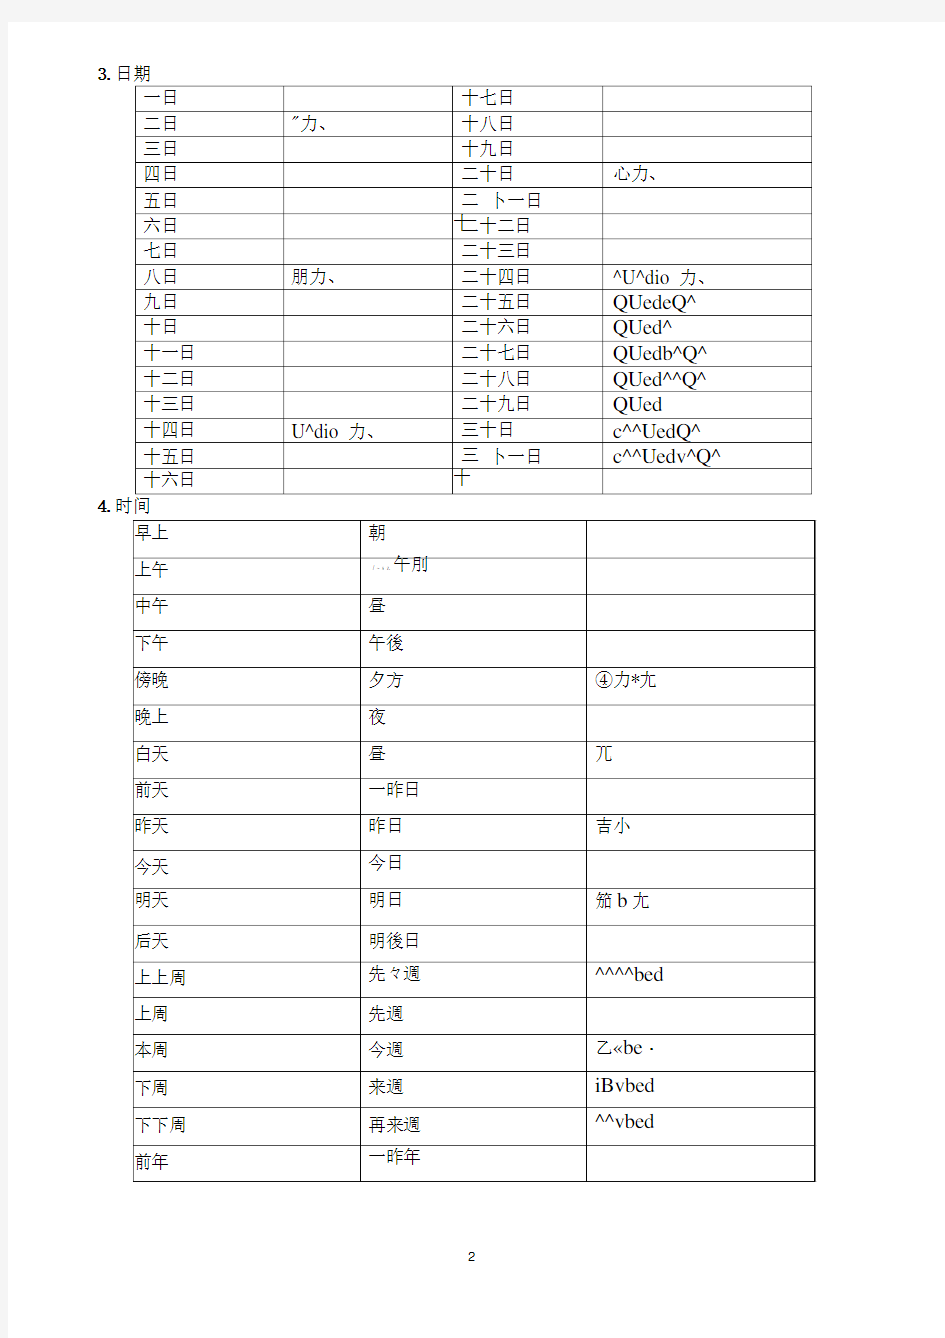 完整版新版标准日本语初级上册1 14课练习题